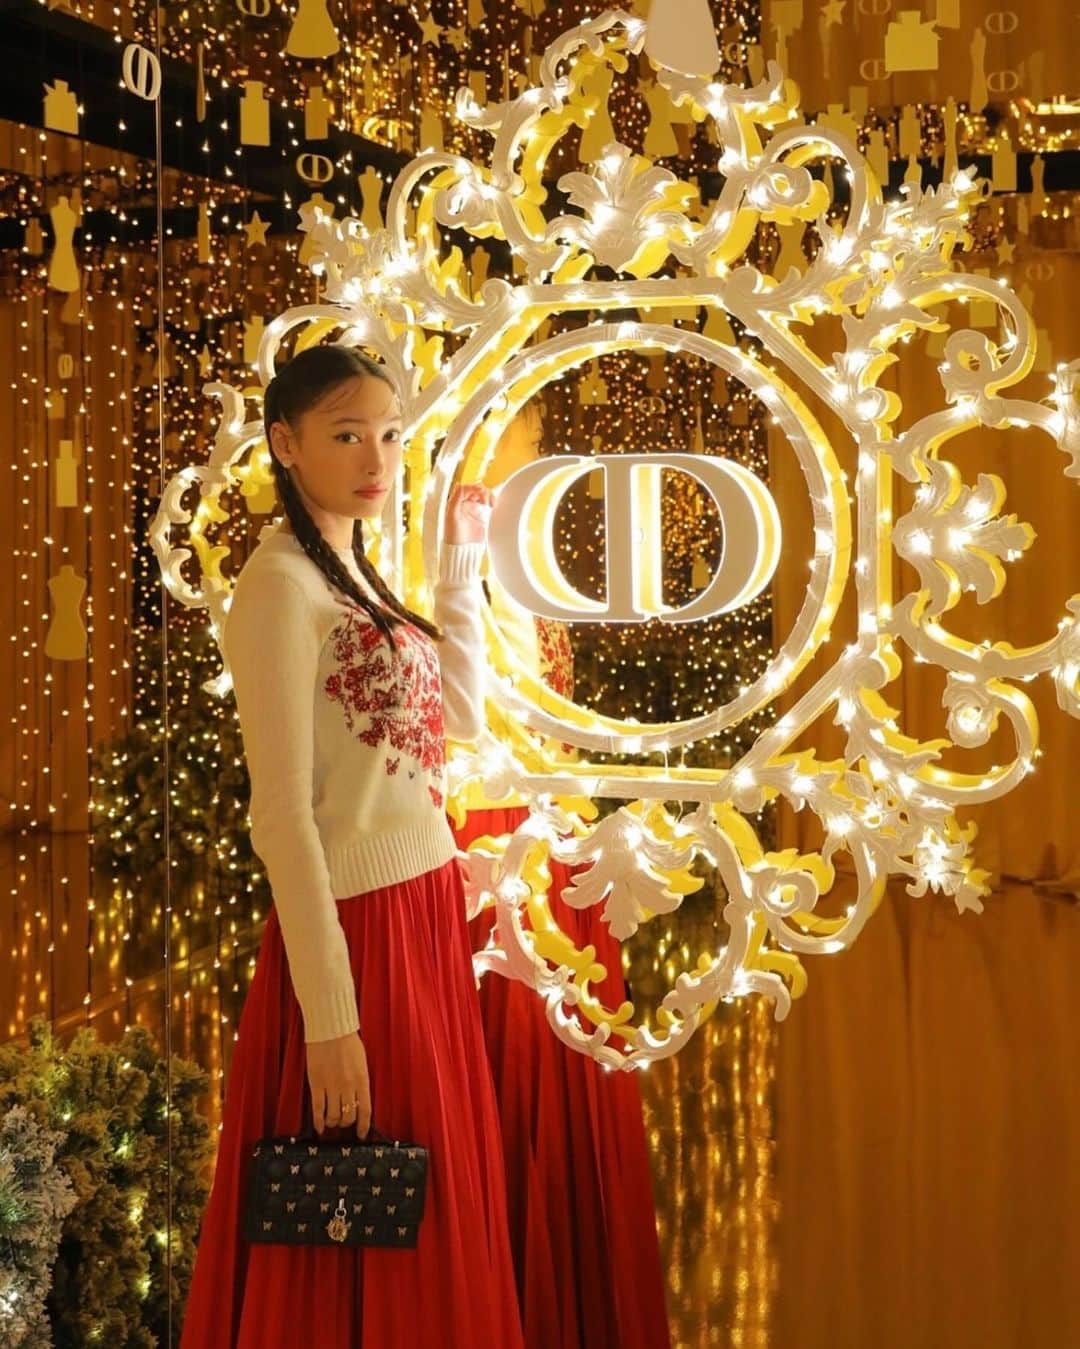 大政絢のインスタグラム：「❄️Dior Beauty❄️  六本木ヒルズアリーナで期間限定にオープンする GARDEN OF DREAMS✨ クリスチャン・ディオールが愛した、パリのチュイルリーガーデンをテーマに！ 期間限定とは思えないほどの幻想的で輝く空間に胸がときめき続けました🤍  @DiorBeauty @Dior #DREAMINDIOR #DIORHOLIDAYS #ガーデンオブドリームズ #ディオールファインジュエリー #SupportedByDior」